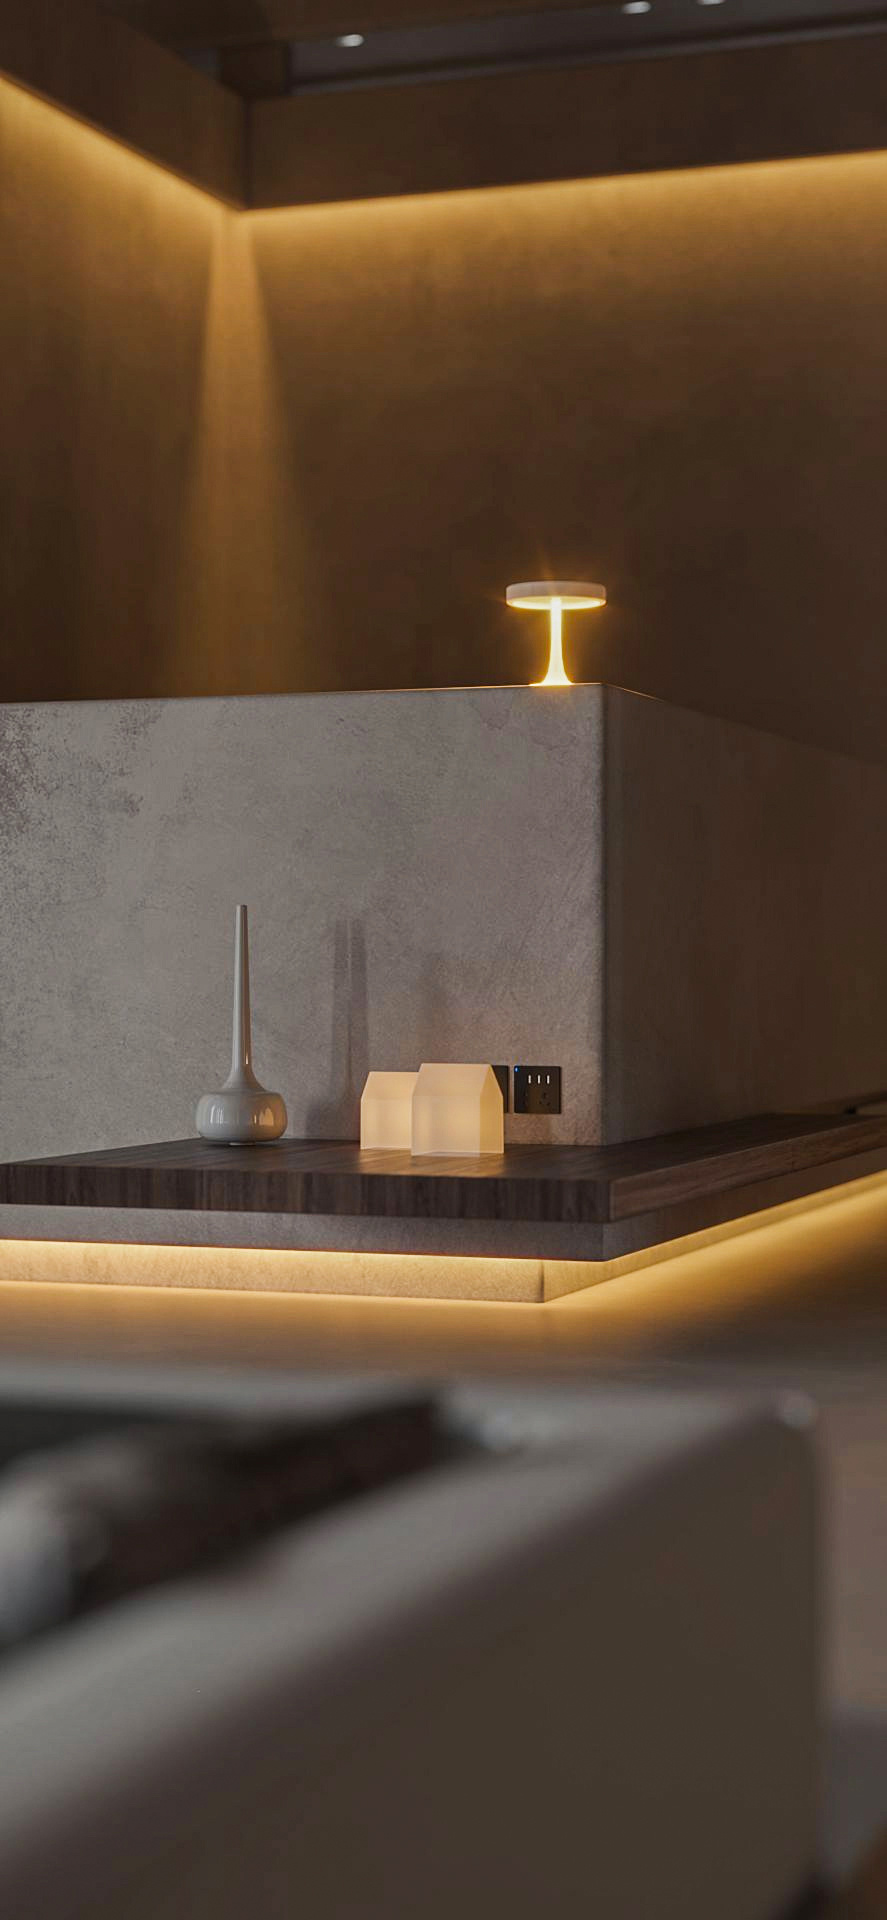 美容spa店面設計給顧客營造舒適氛圍的燈光